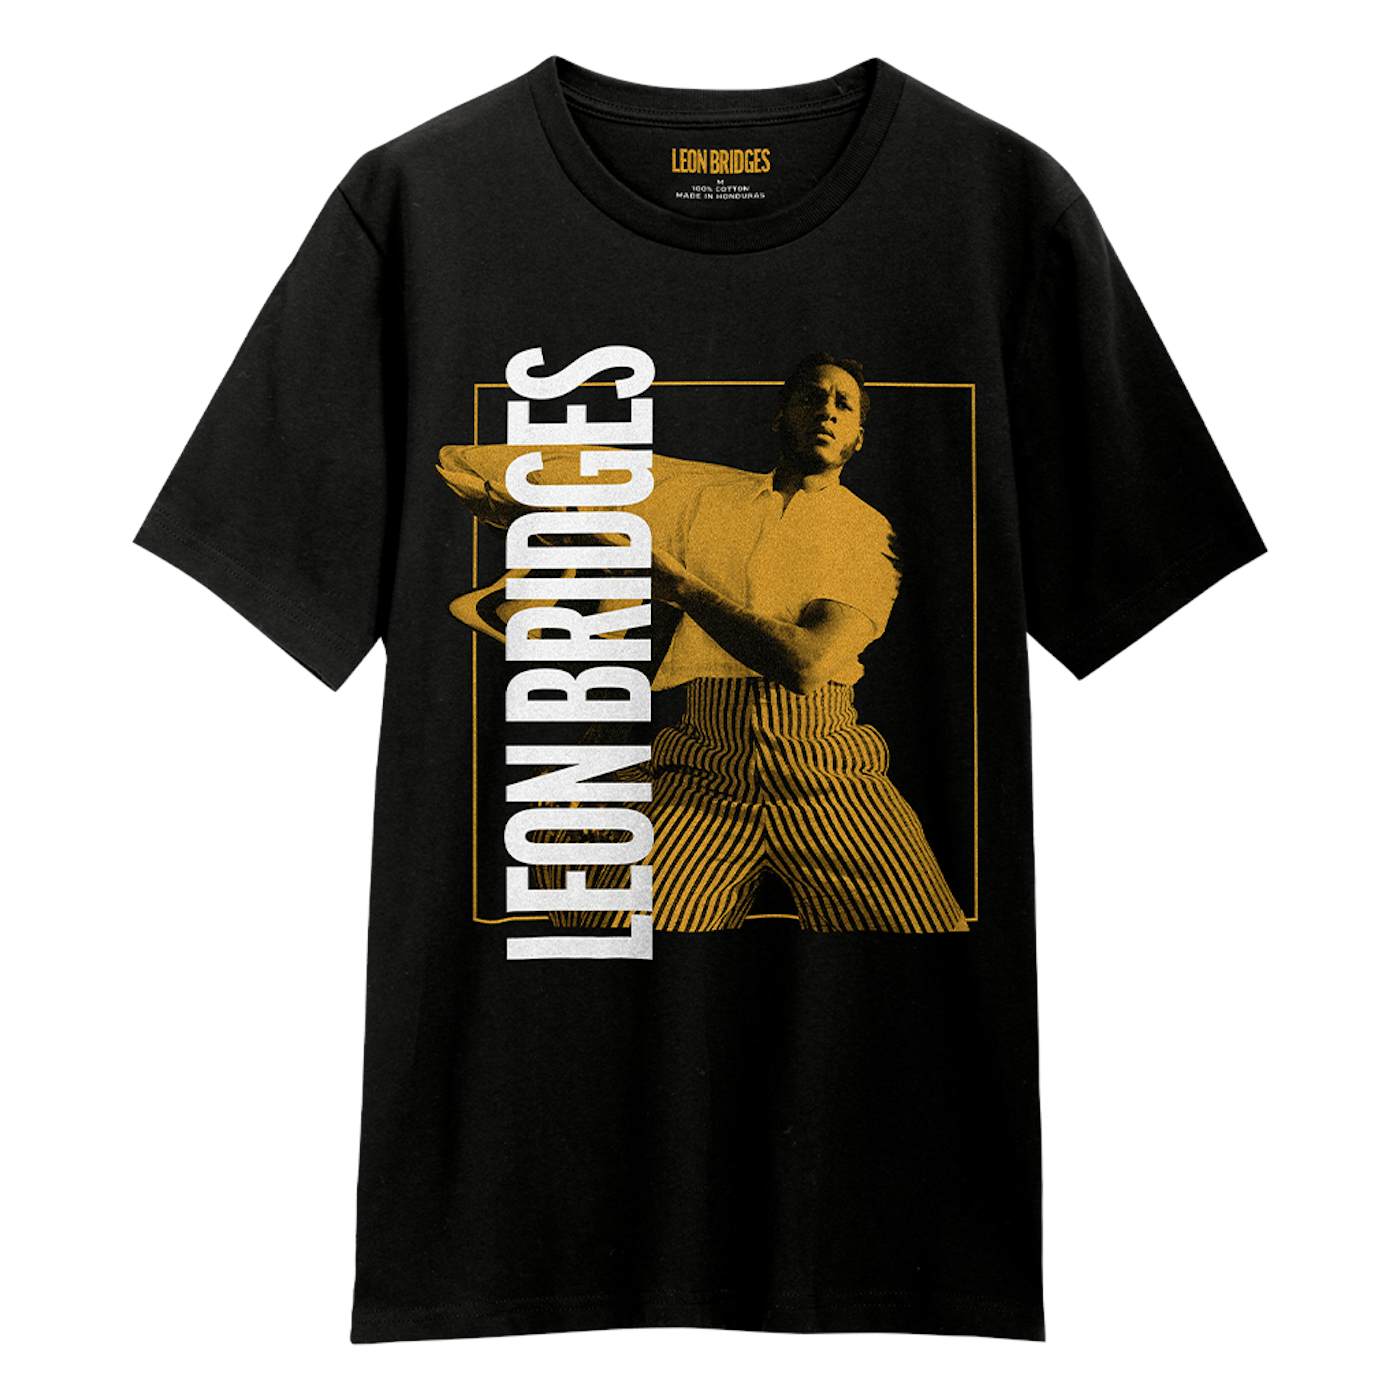 Leon Bridges US Spring Tour 2022 T-Shirt